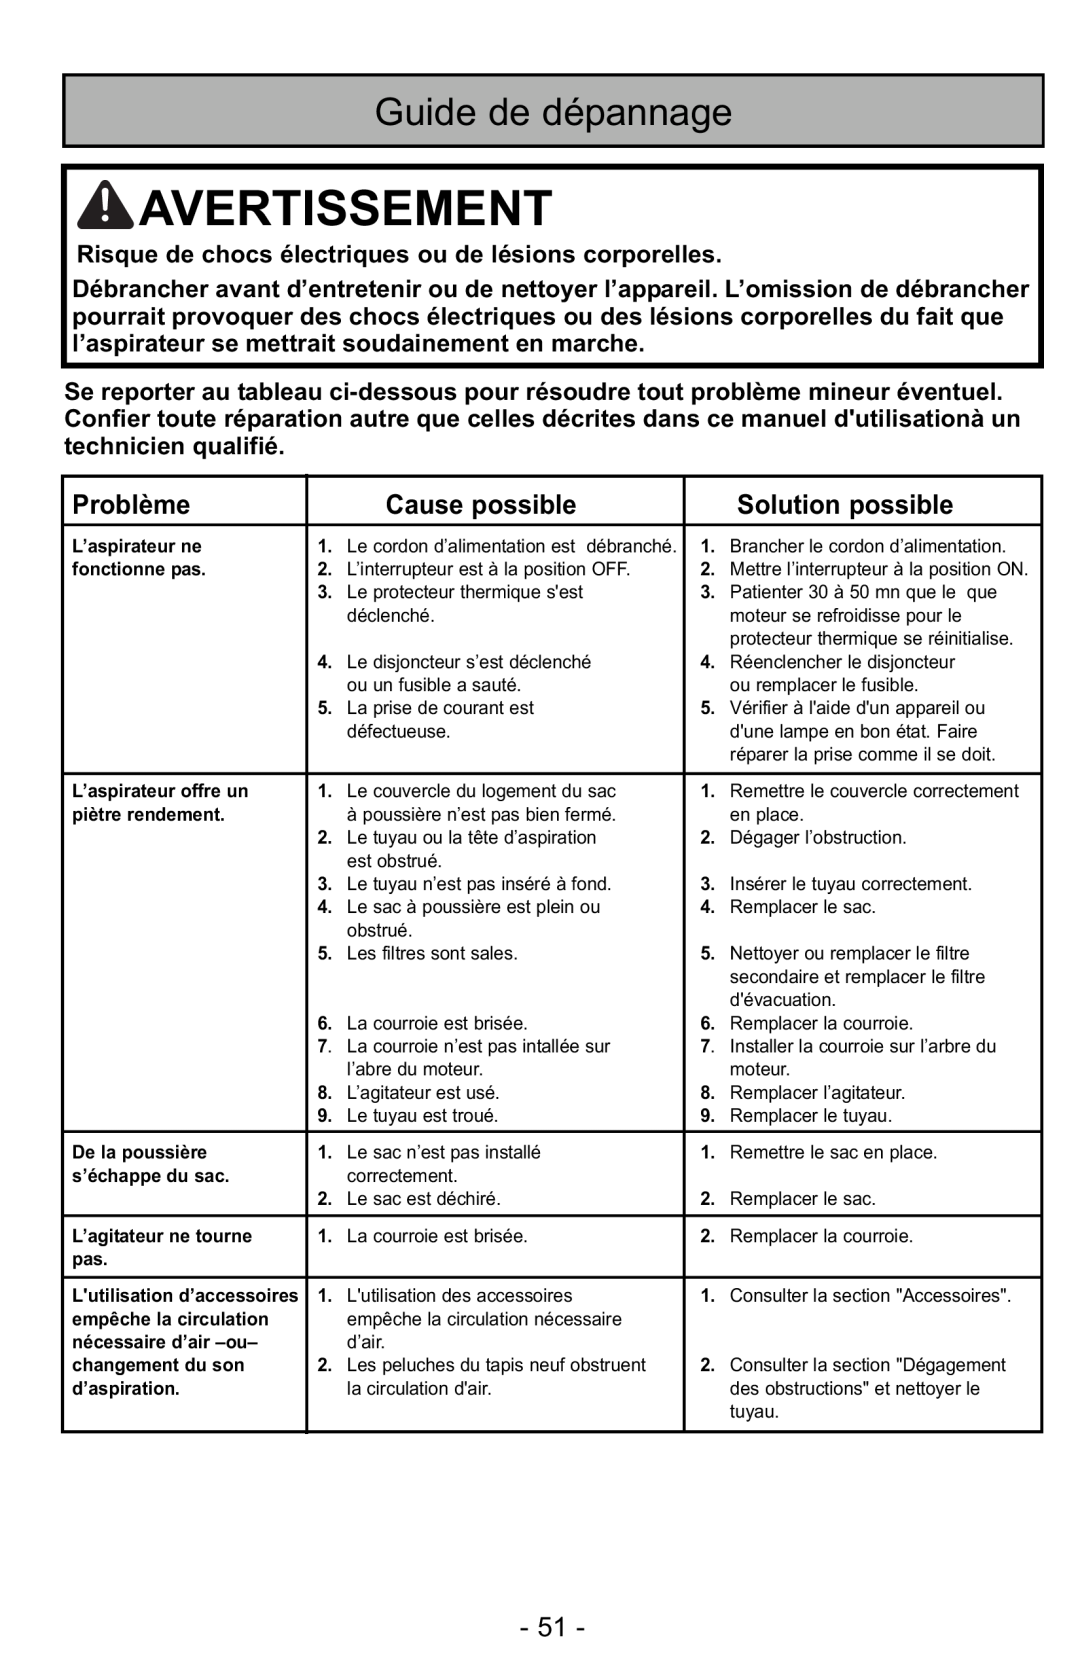 Panasonic MC-GG525 manuel dutilisation Guide de dépannage, Problème, Cause possible, Solution possible, Avertissement 